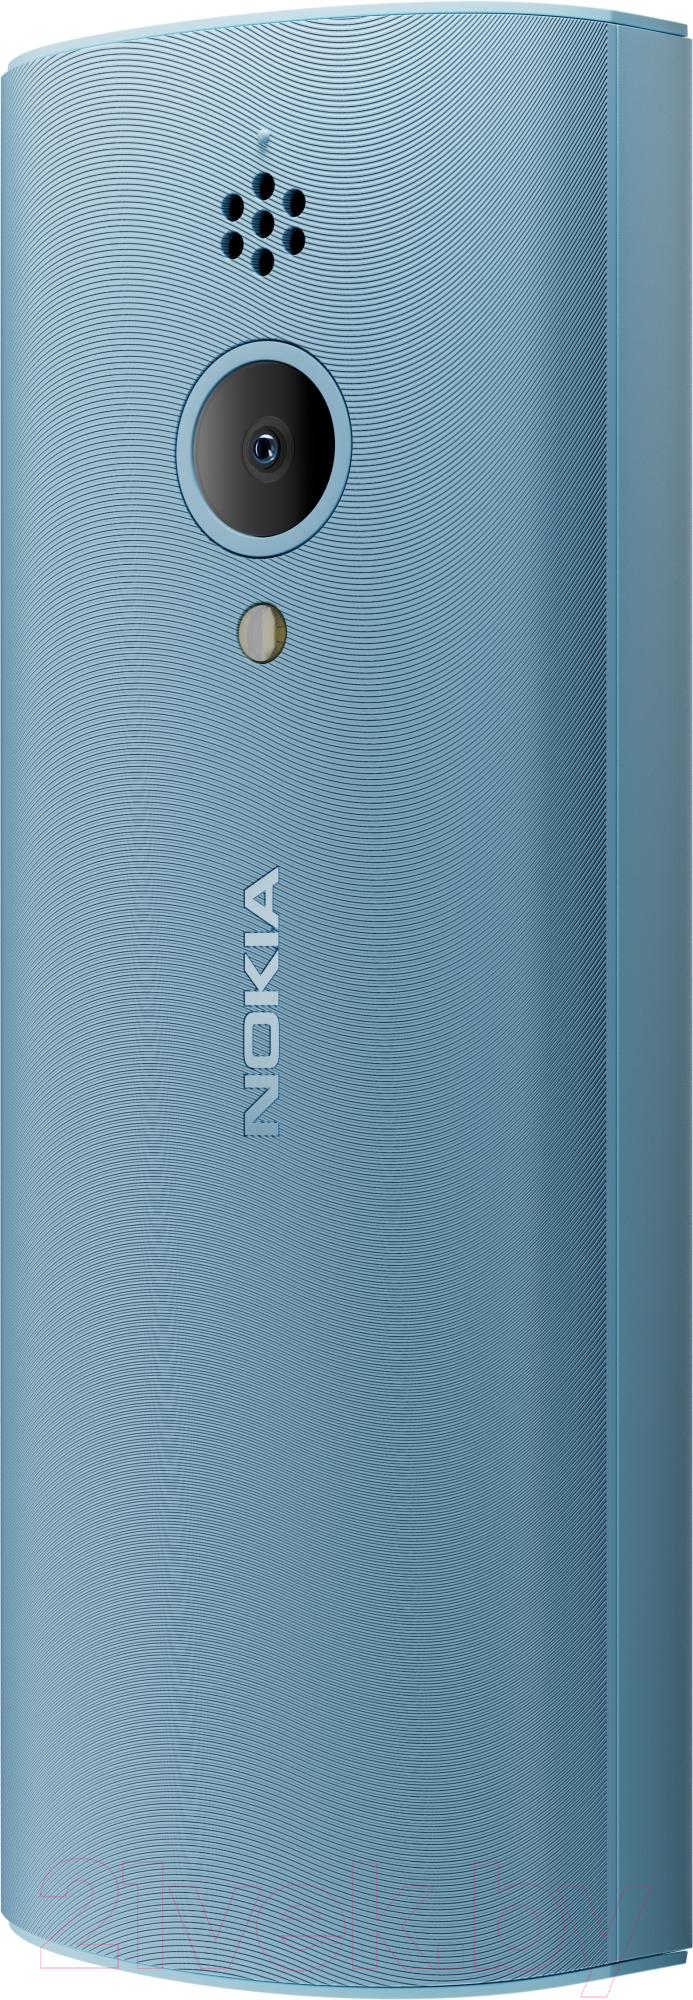 Мобильный телефон Nokia 150 DS / ТА-1582